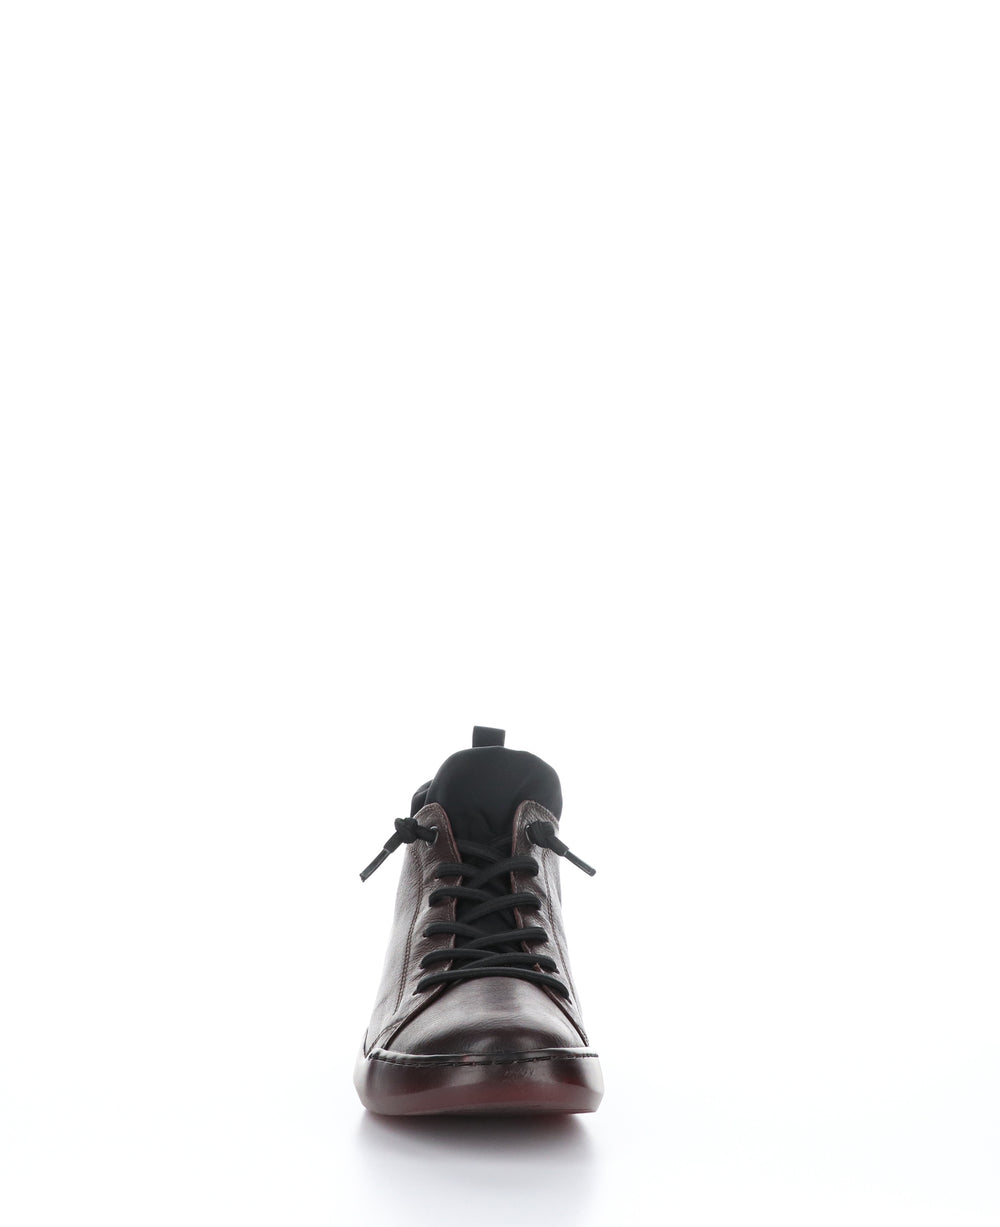 BIEL549SOF Wine/Black Round Toe Shoes|BIEL549SOF Chaussures à Bout Rond in Violet